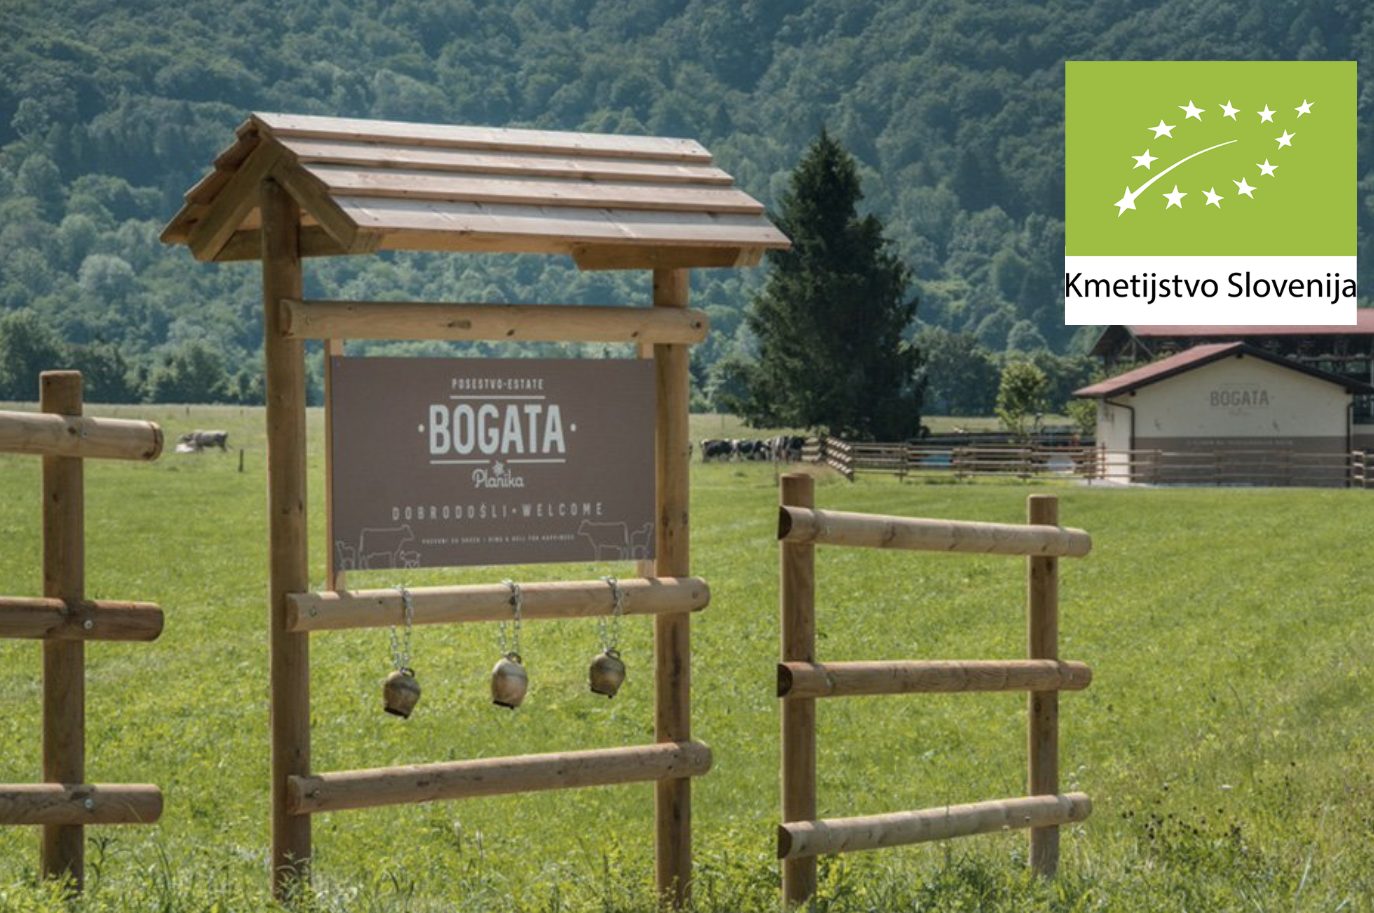 Na sliki je kozolec z napisom Bogata, desno zgoraj znak za ekološko pridelavo, kmetijstvo Slovenija